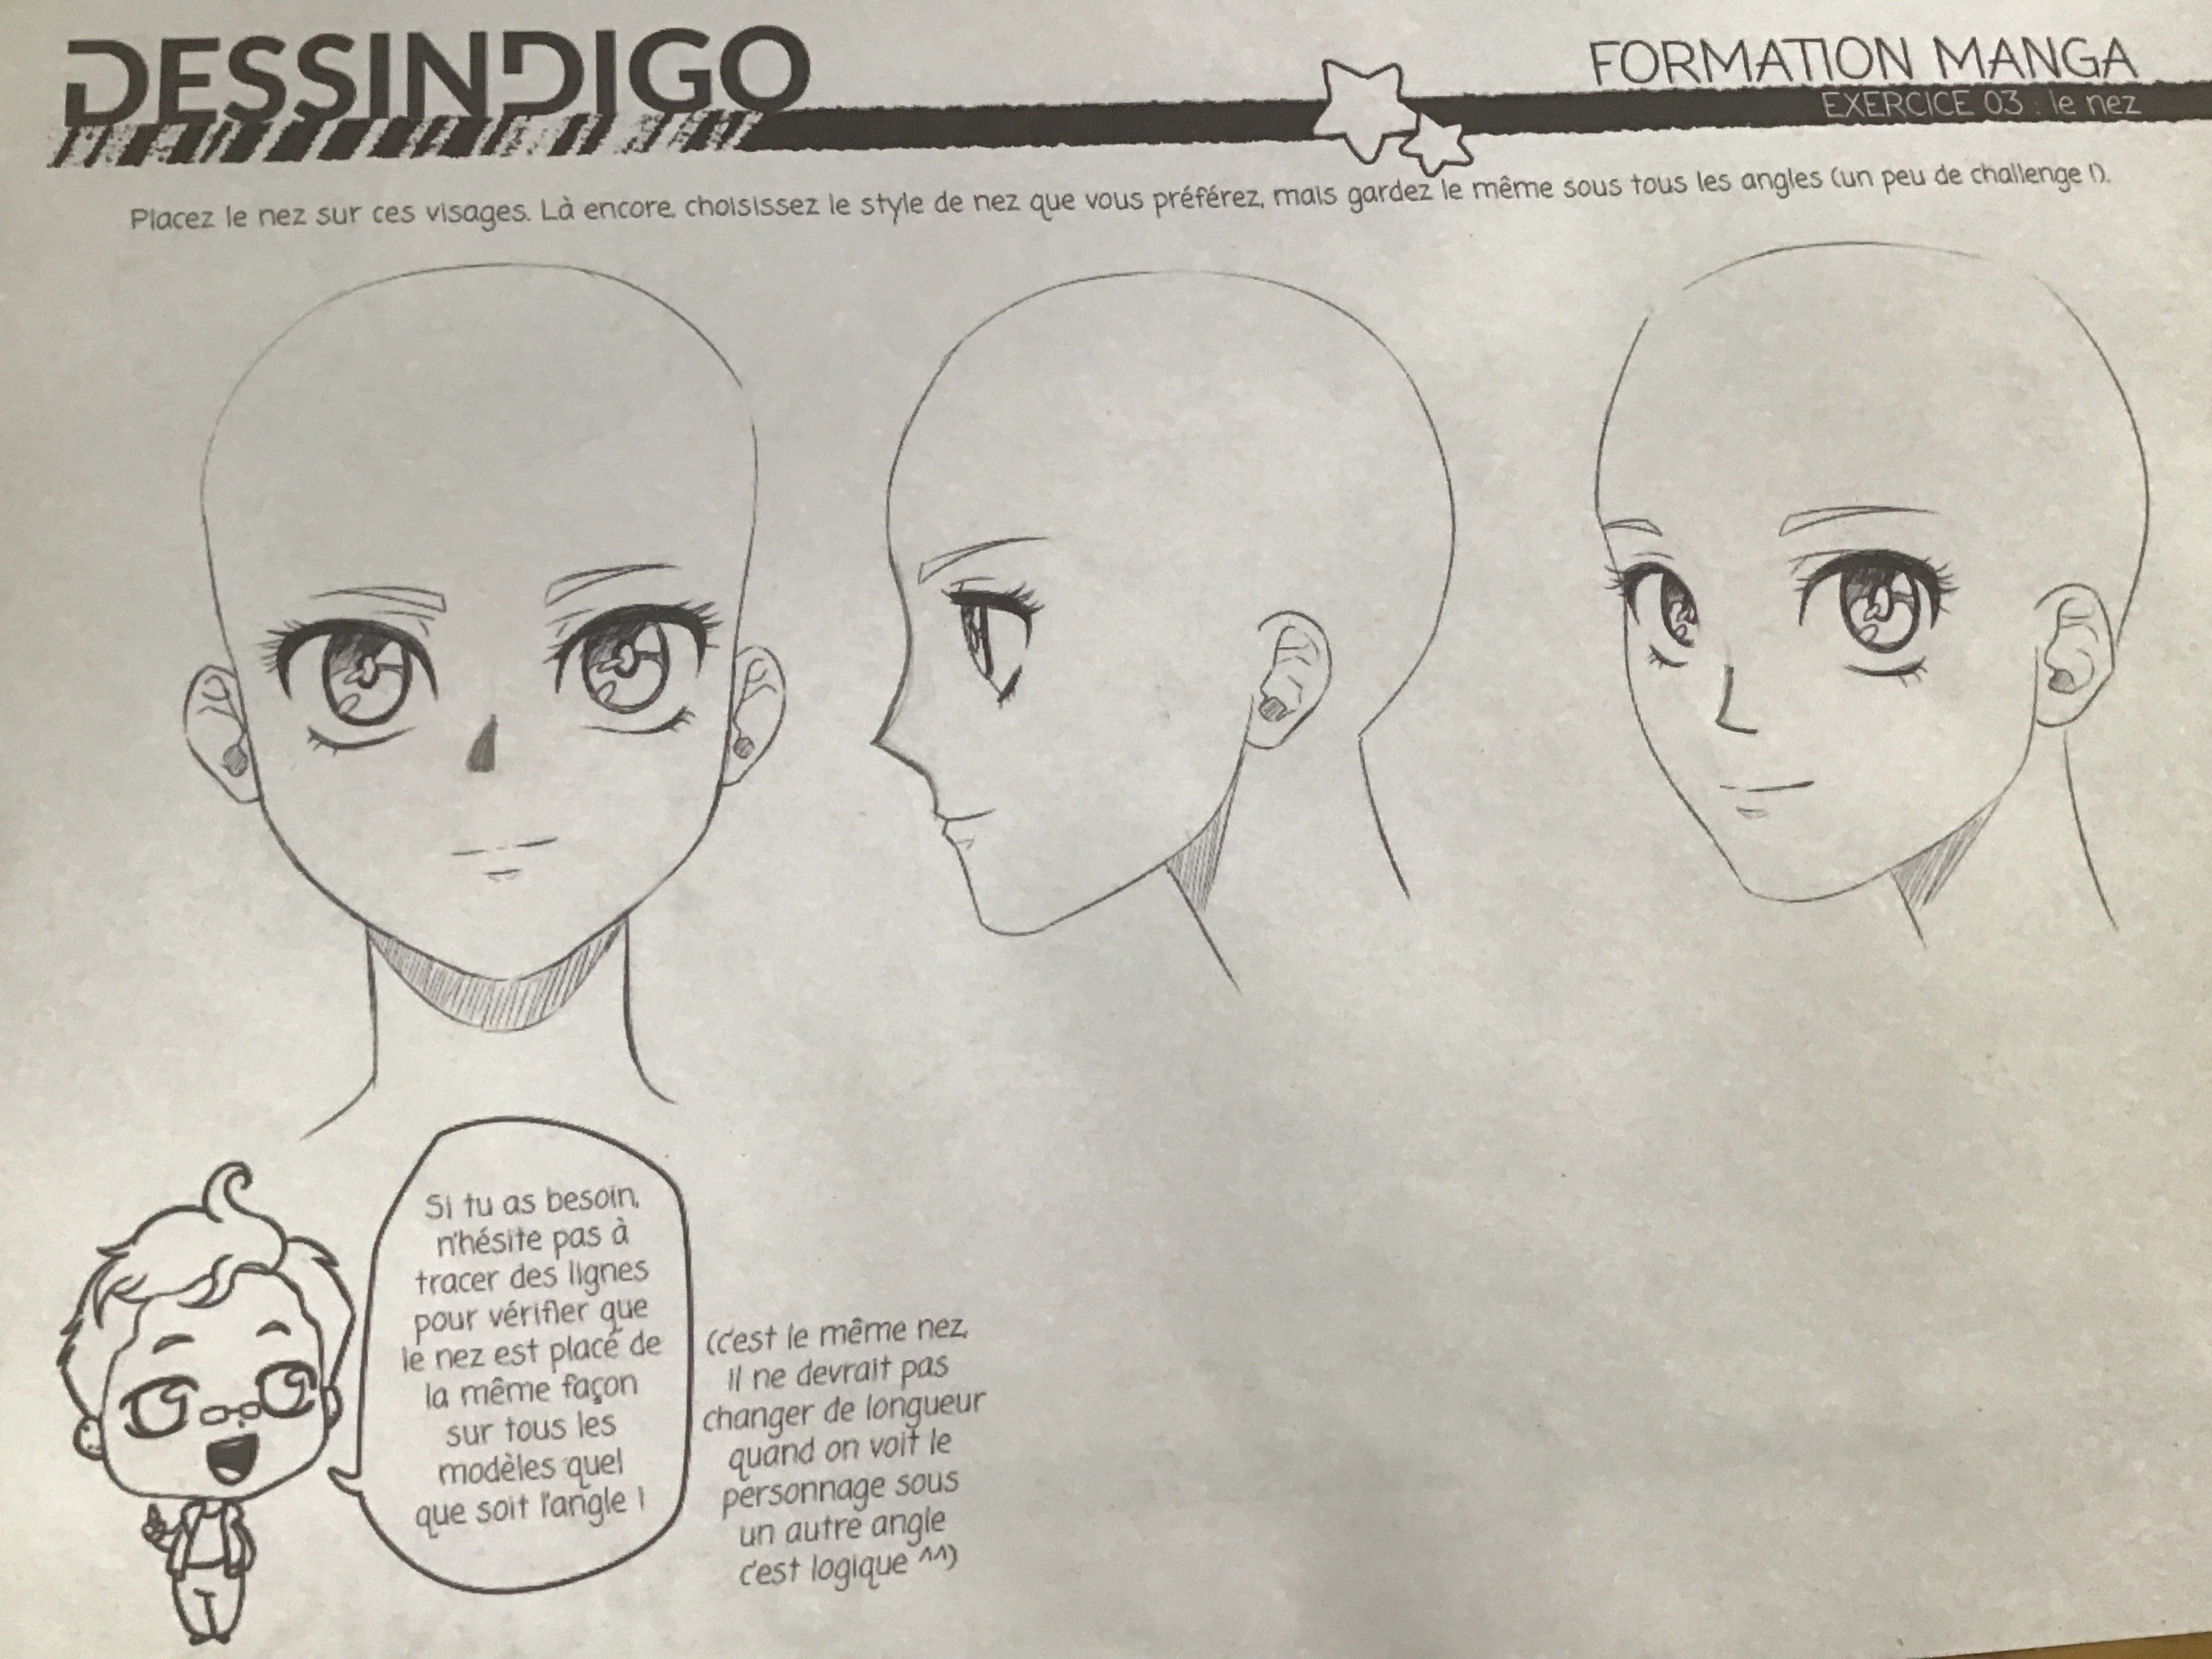 Apprendre à dessiner un manga - Dessindigo